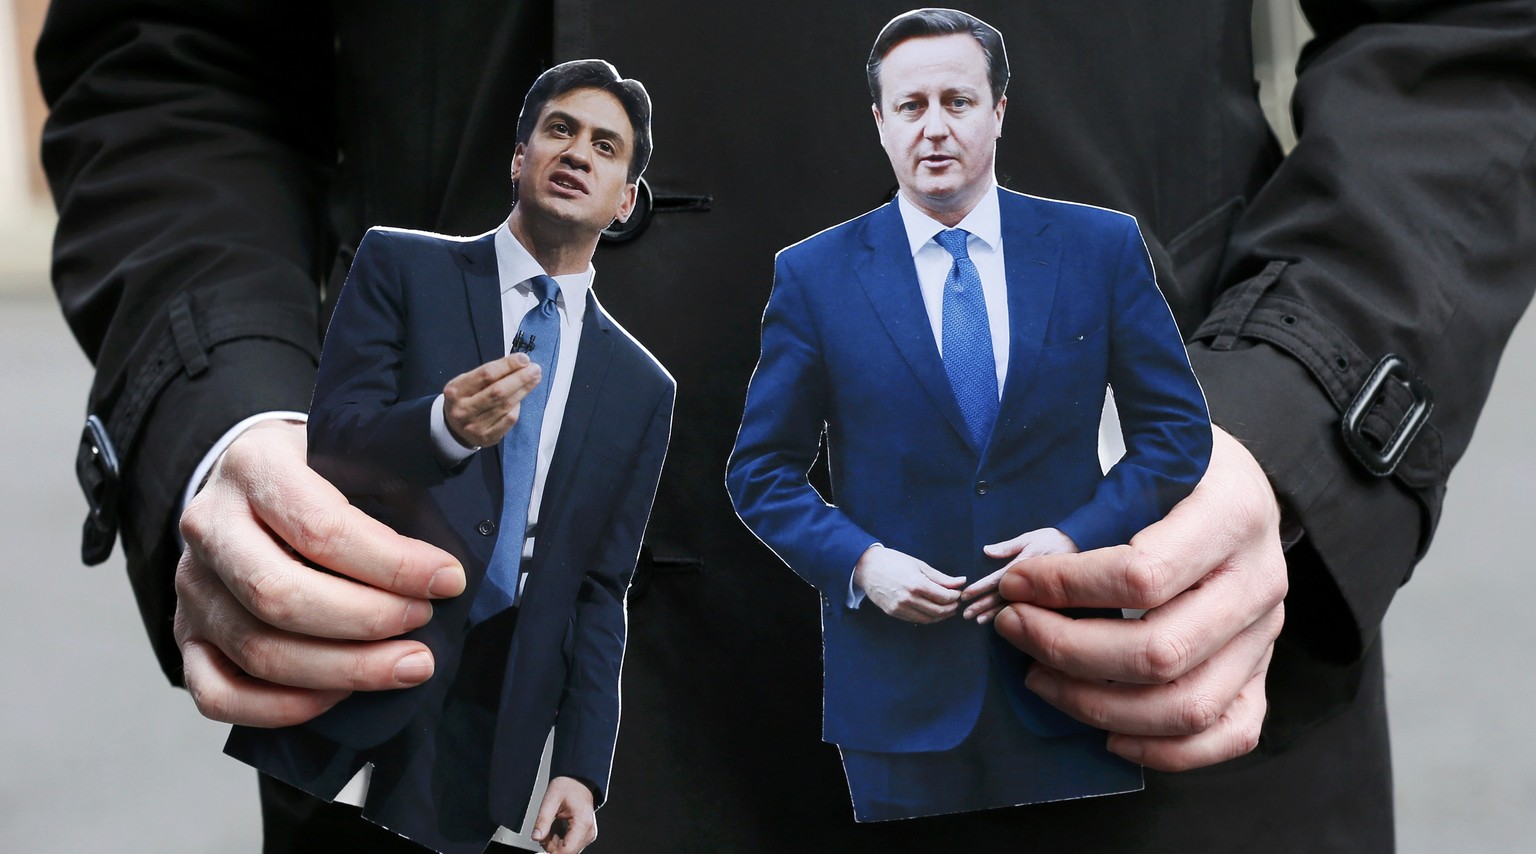 Wer wird Grossbritannien künftig regieren? Der bisherige Cameron oder Labor-Kandidat Miliband?